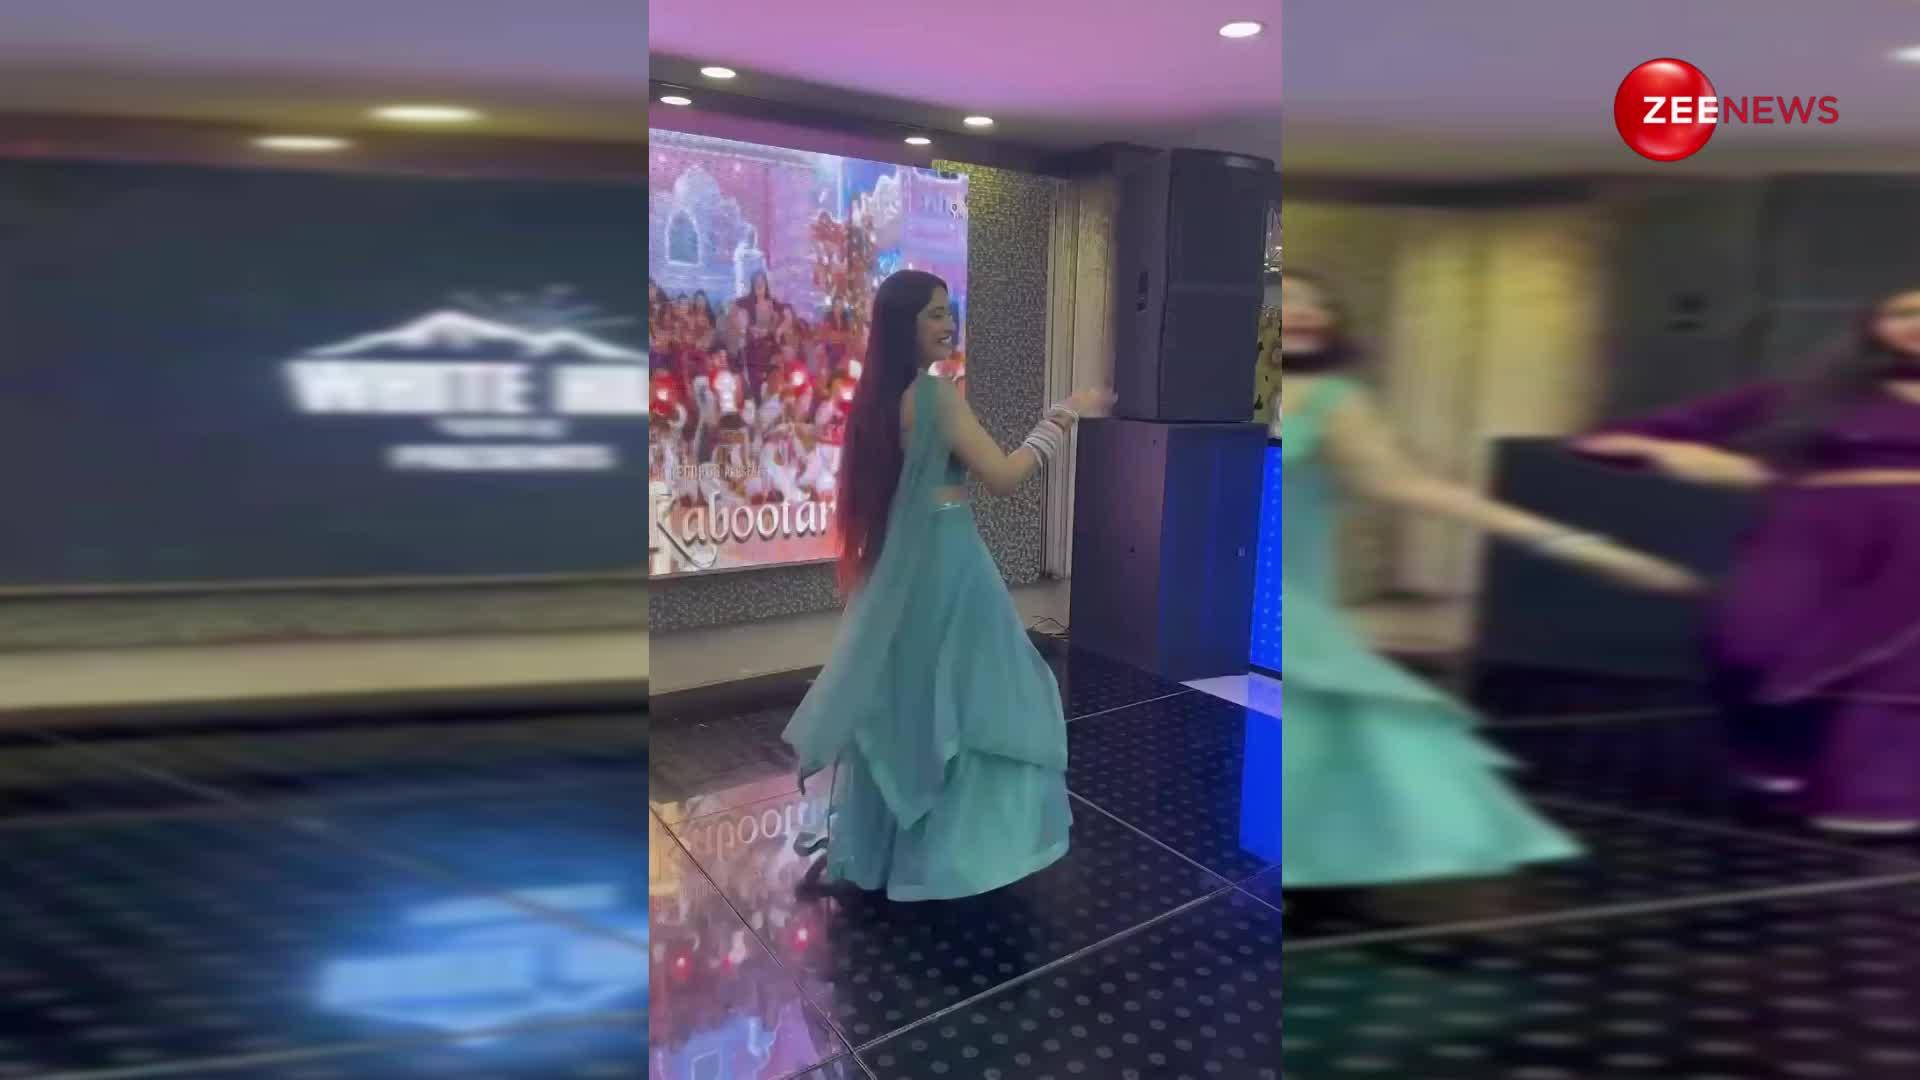 भाई की शादी में बहन ने किया देसी गाने पर जबरदस्त डांस, देख खुल गई लोगों की नींद